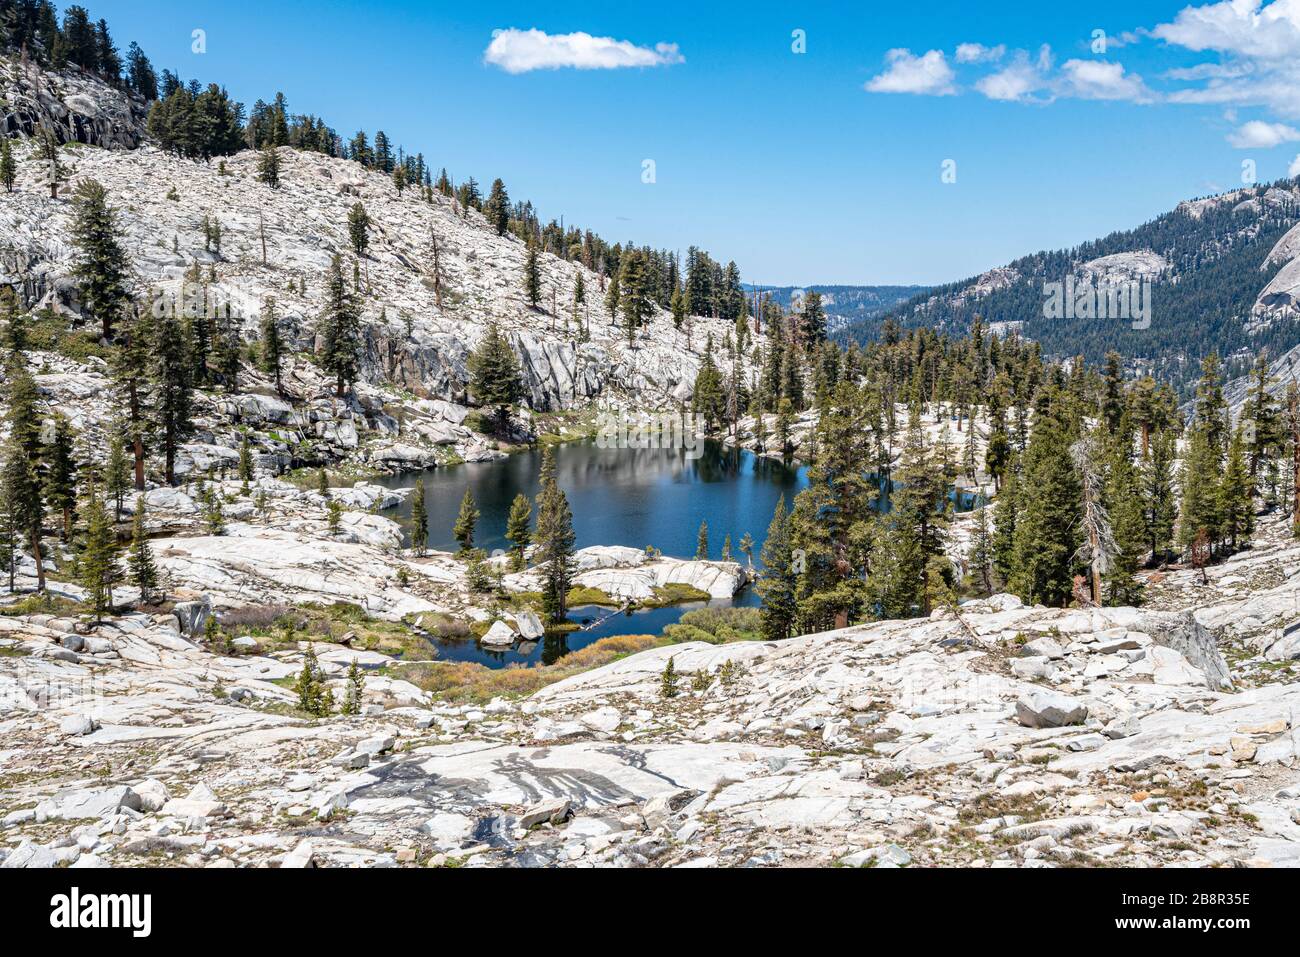 Le sentier Lakes Trail du parc national Sequoia offre une vue imprenable sur les montagnes de granit poli de la Sierra Nevada Range. Banque D'Images